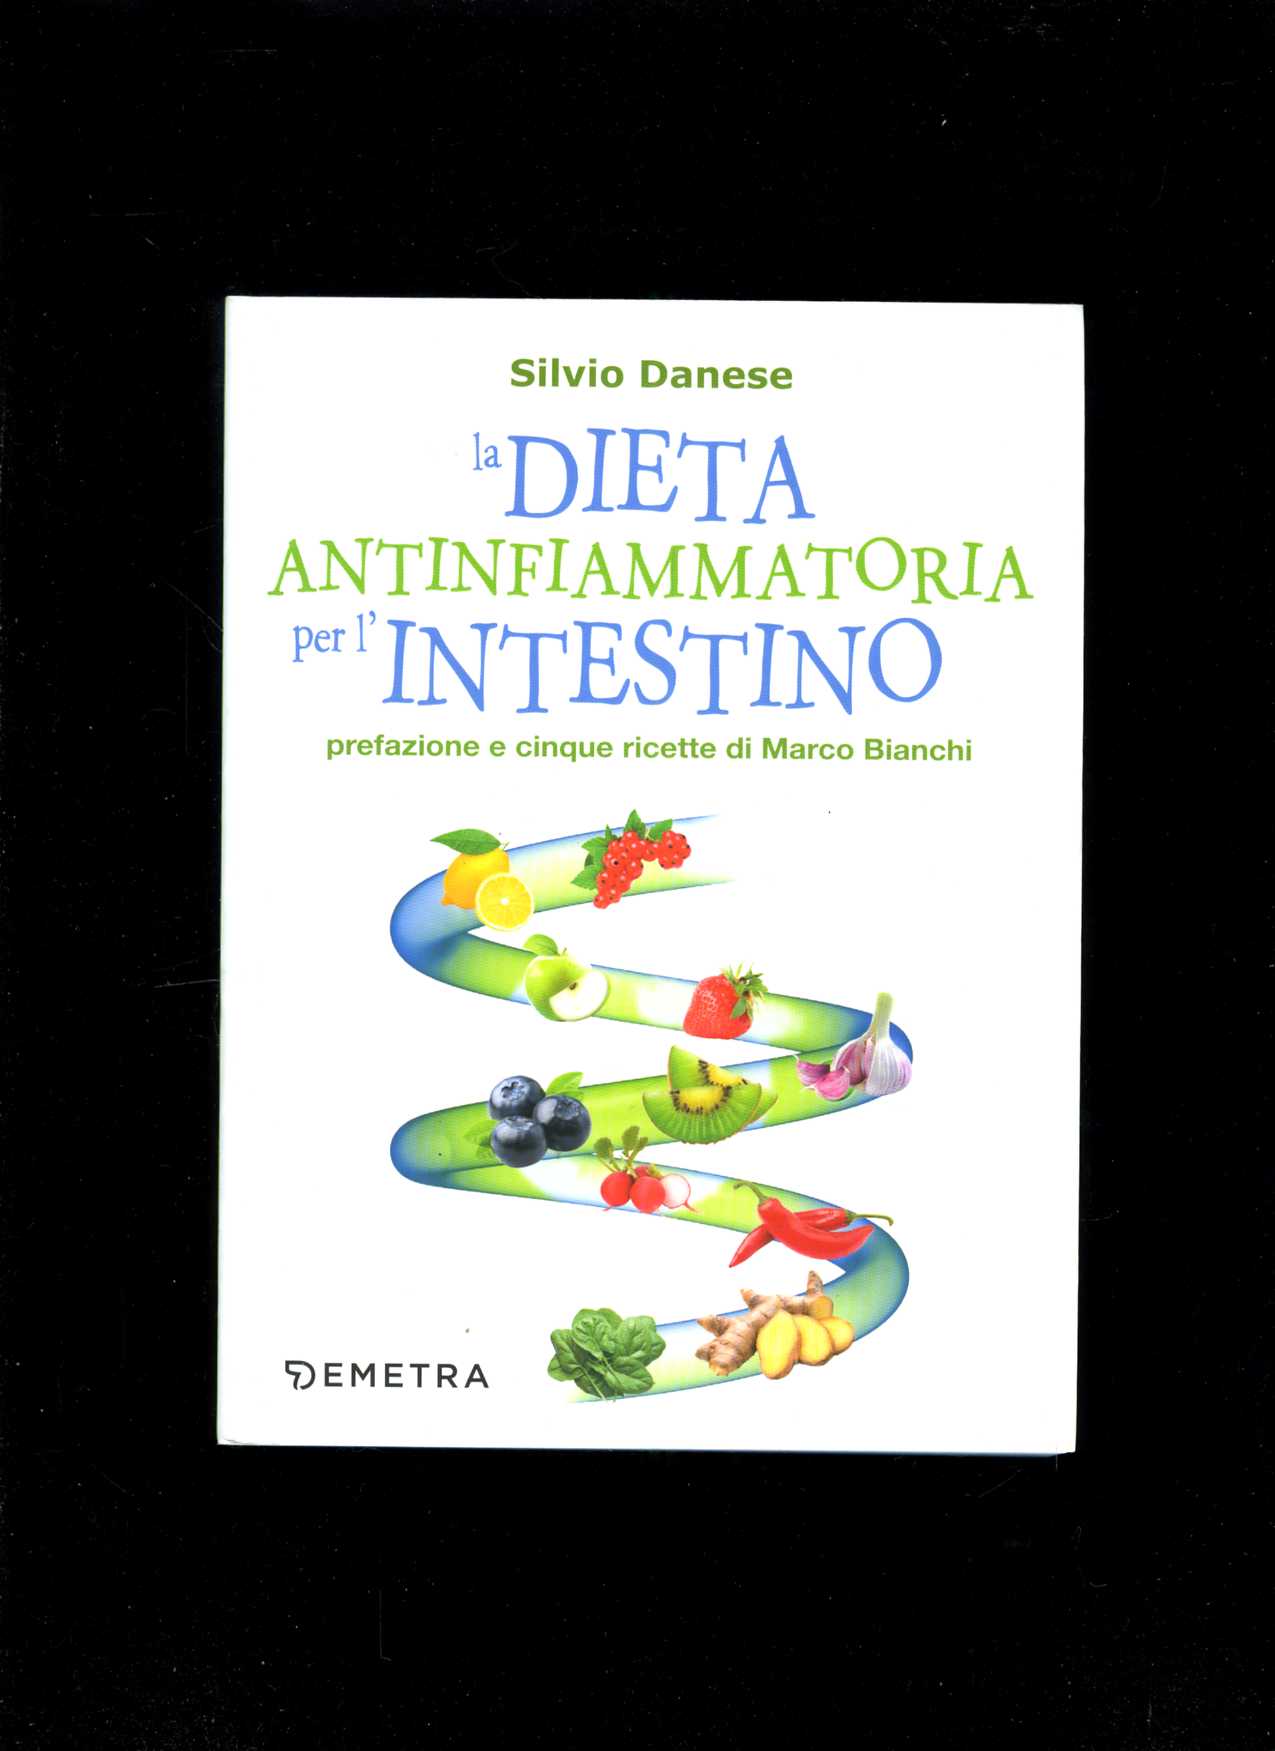 La dieta antinfiammatoria per l'intestino (Silvio Danese)